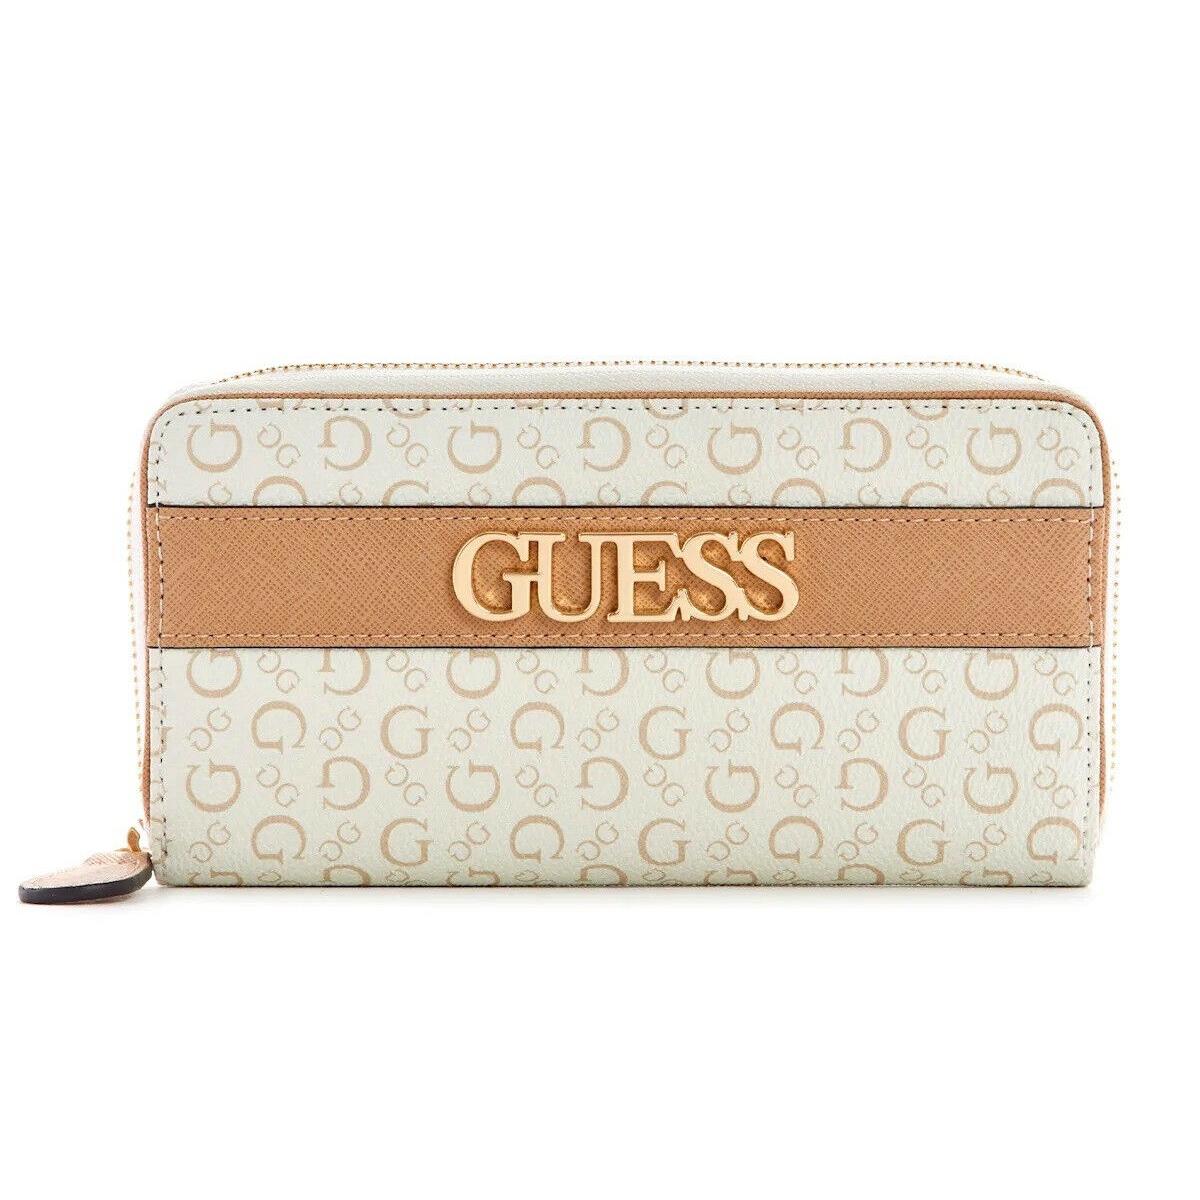 Guess Women`s Logo Print Zip-around Wallet Clutch Bag - White / Tan